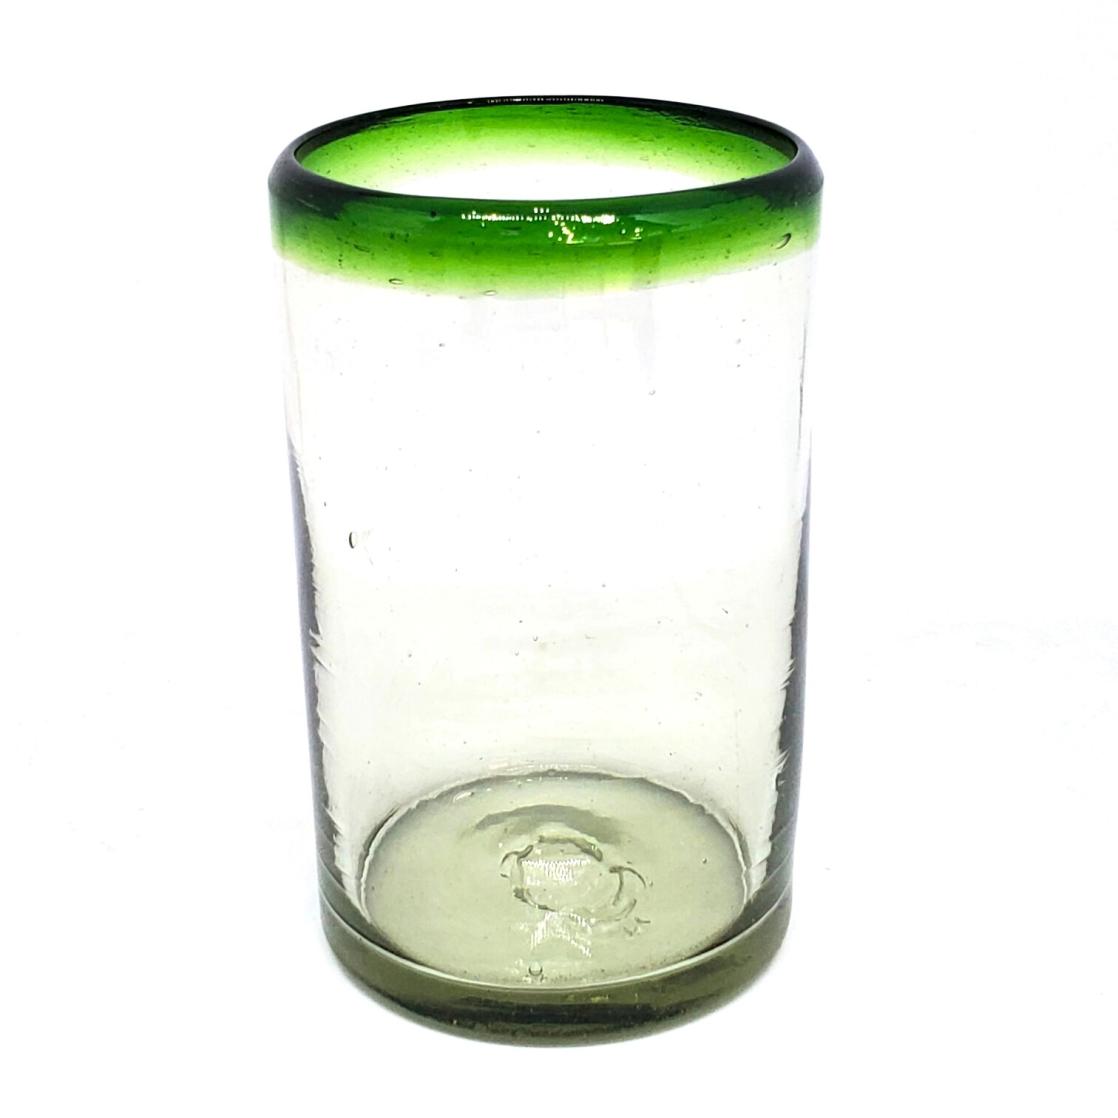 Borde de Color al Mayoreo / vasos grandes con borde verde esmeralda, 14 oz, Vidrio Reciclado, Libre de Plomo y Toxinas / stos artesanales vasos le darn un toque clsico a su bebida favorita.